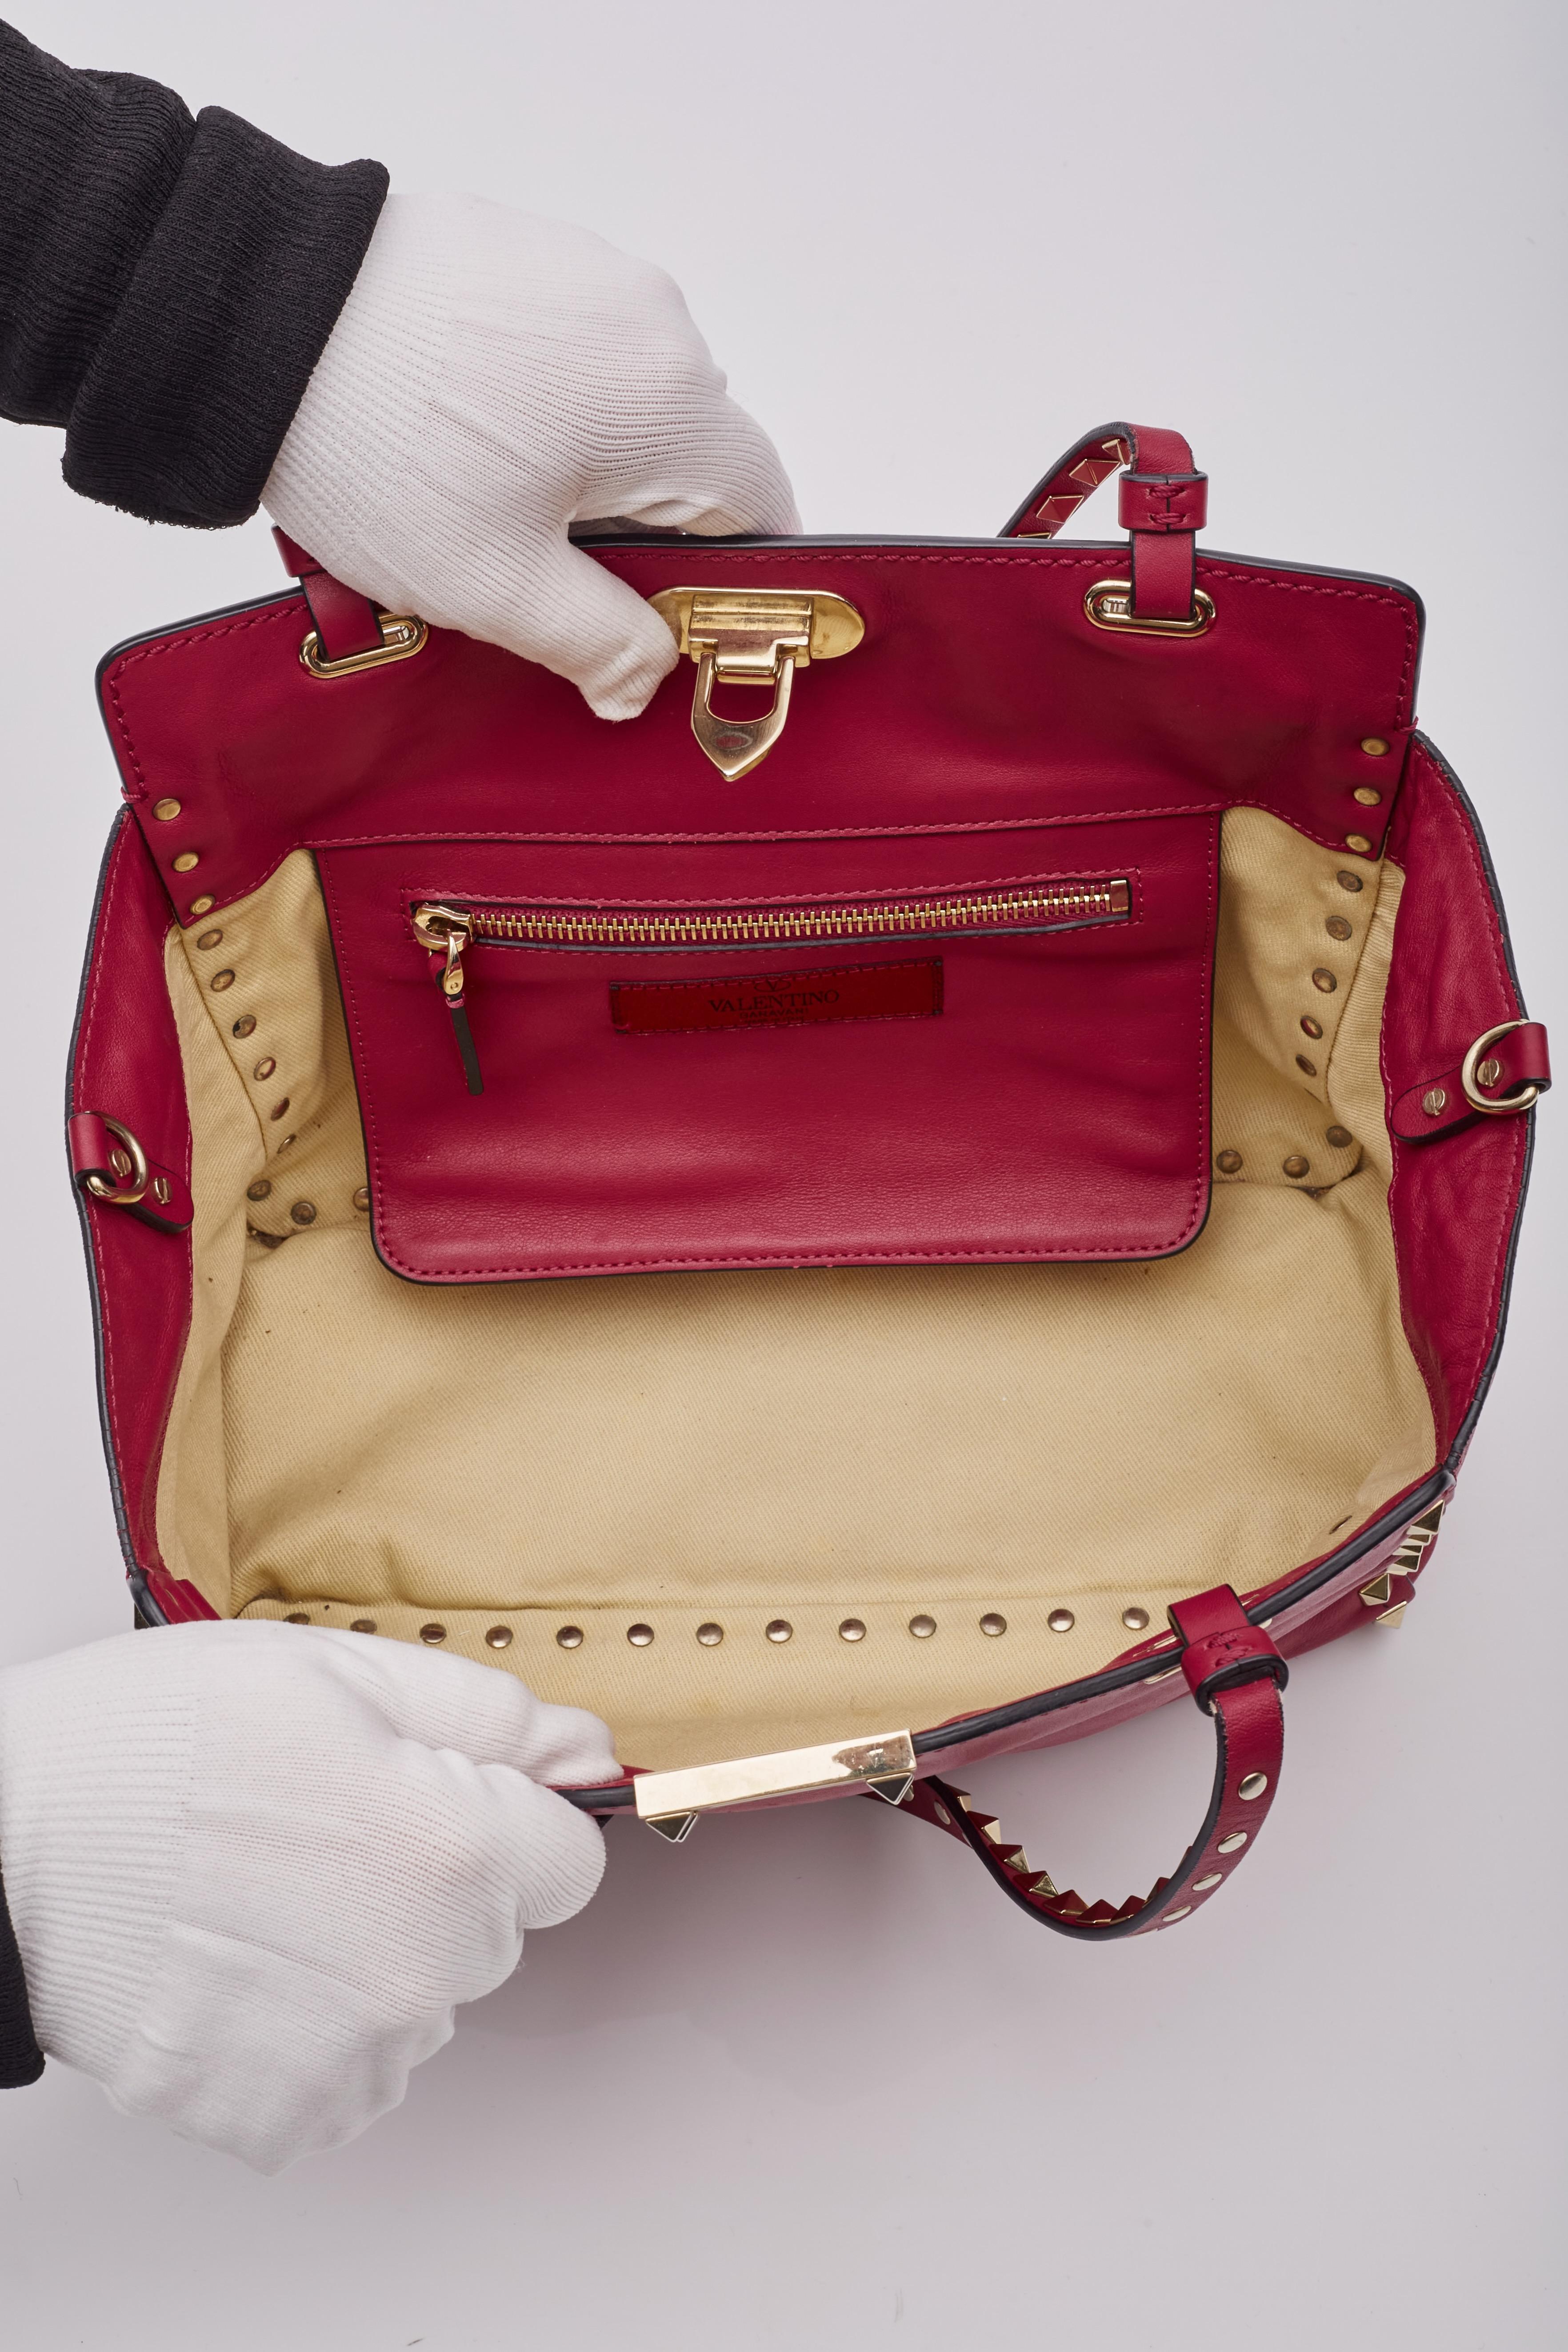 Valentino Garavani Red Leather Rockstud Shoulder Bag 3